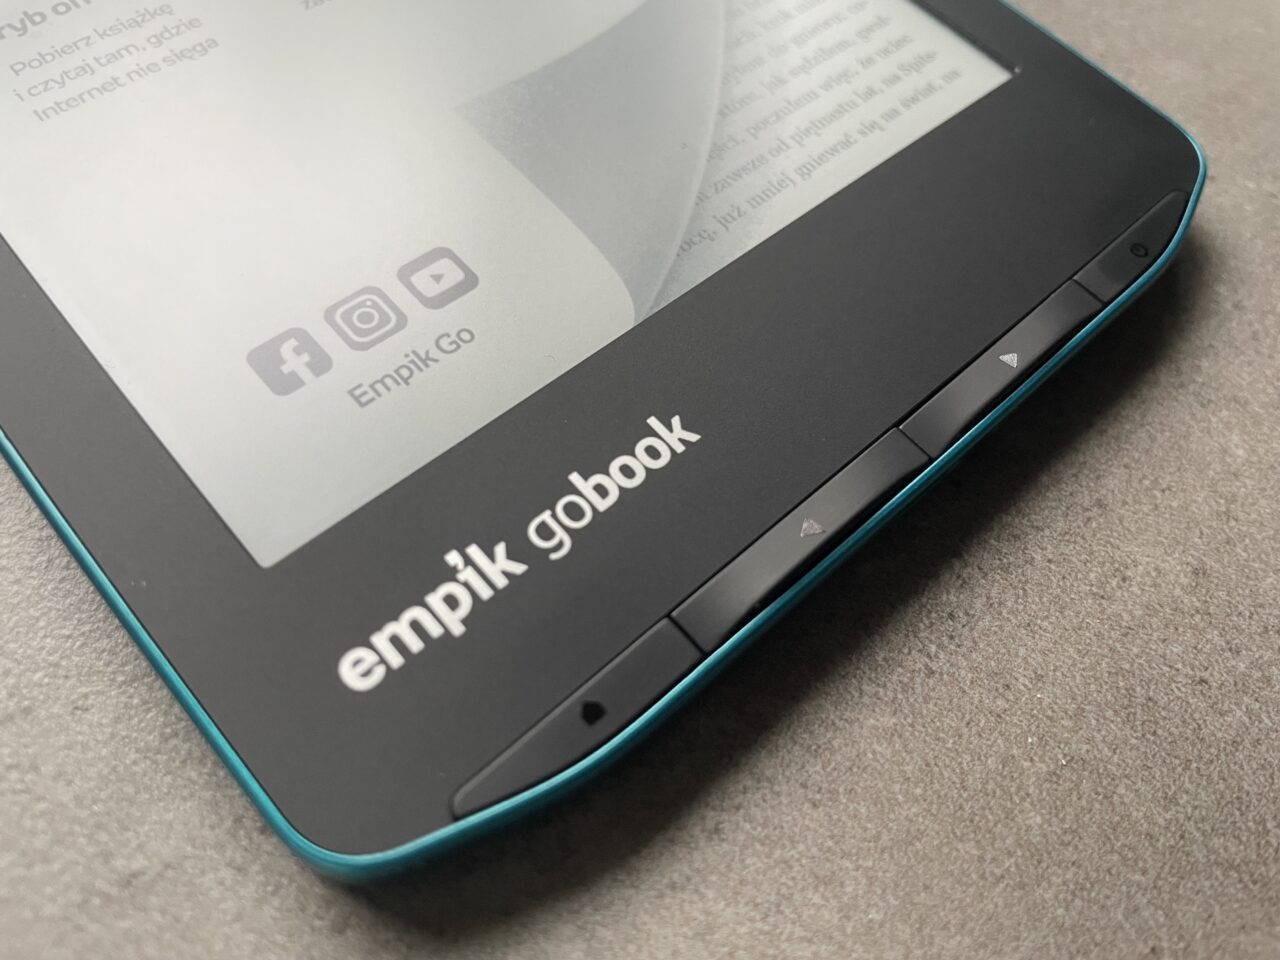 Część przedniego panelu czarnego czytnika e-booków z turkusowym obramowaniem i wyświetlonym tekstem, z widoczną nazwą produktu "empik gobook" oraz przyciskami nawigacyjnymi.